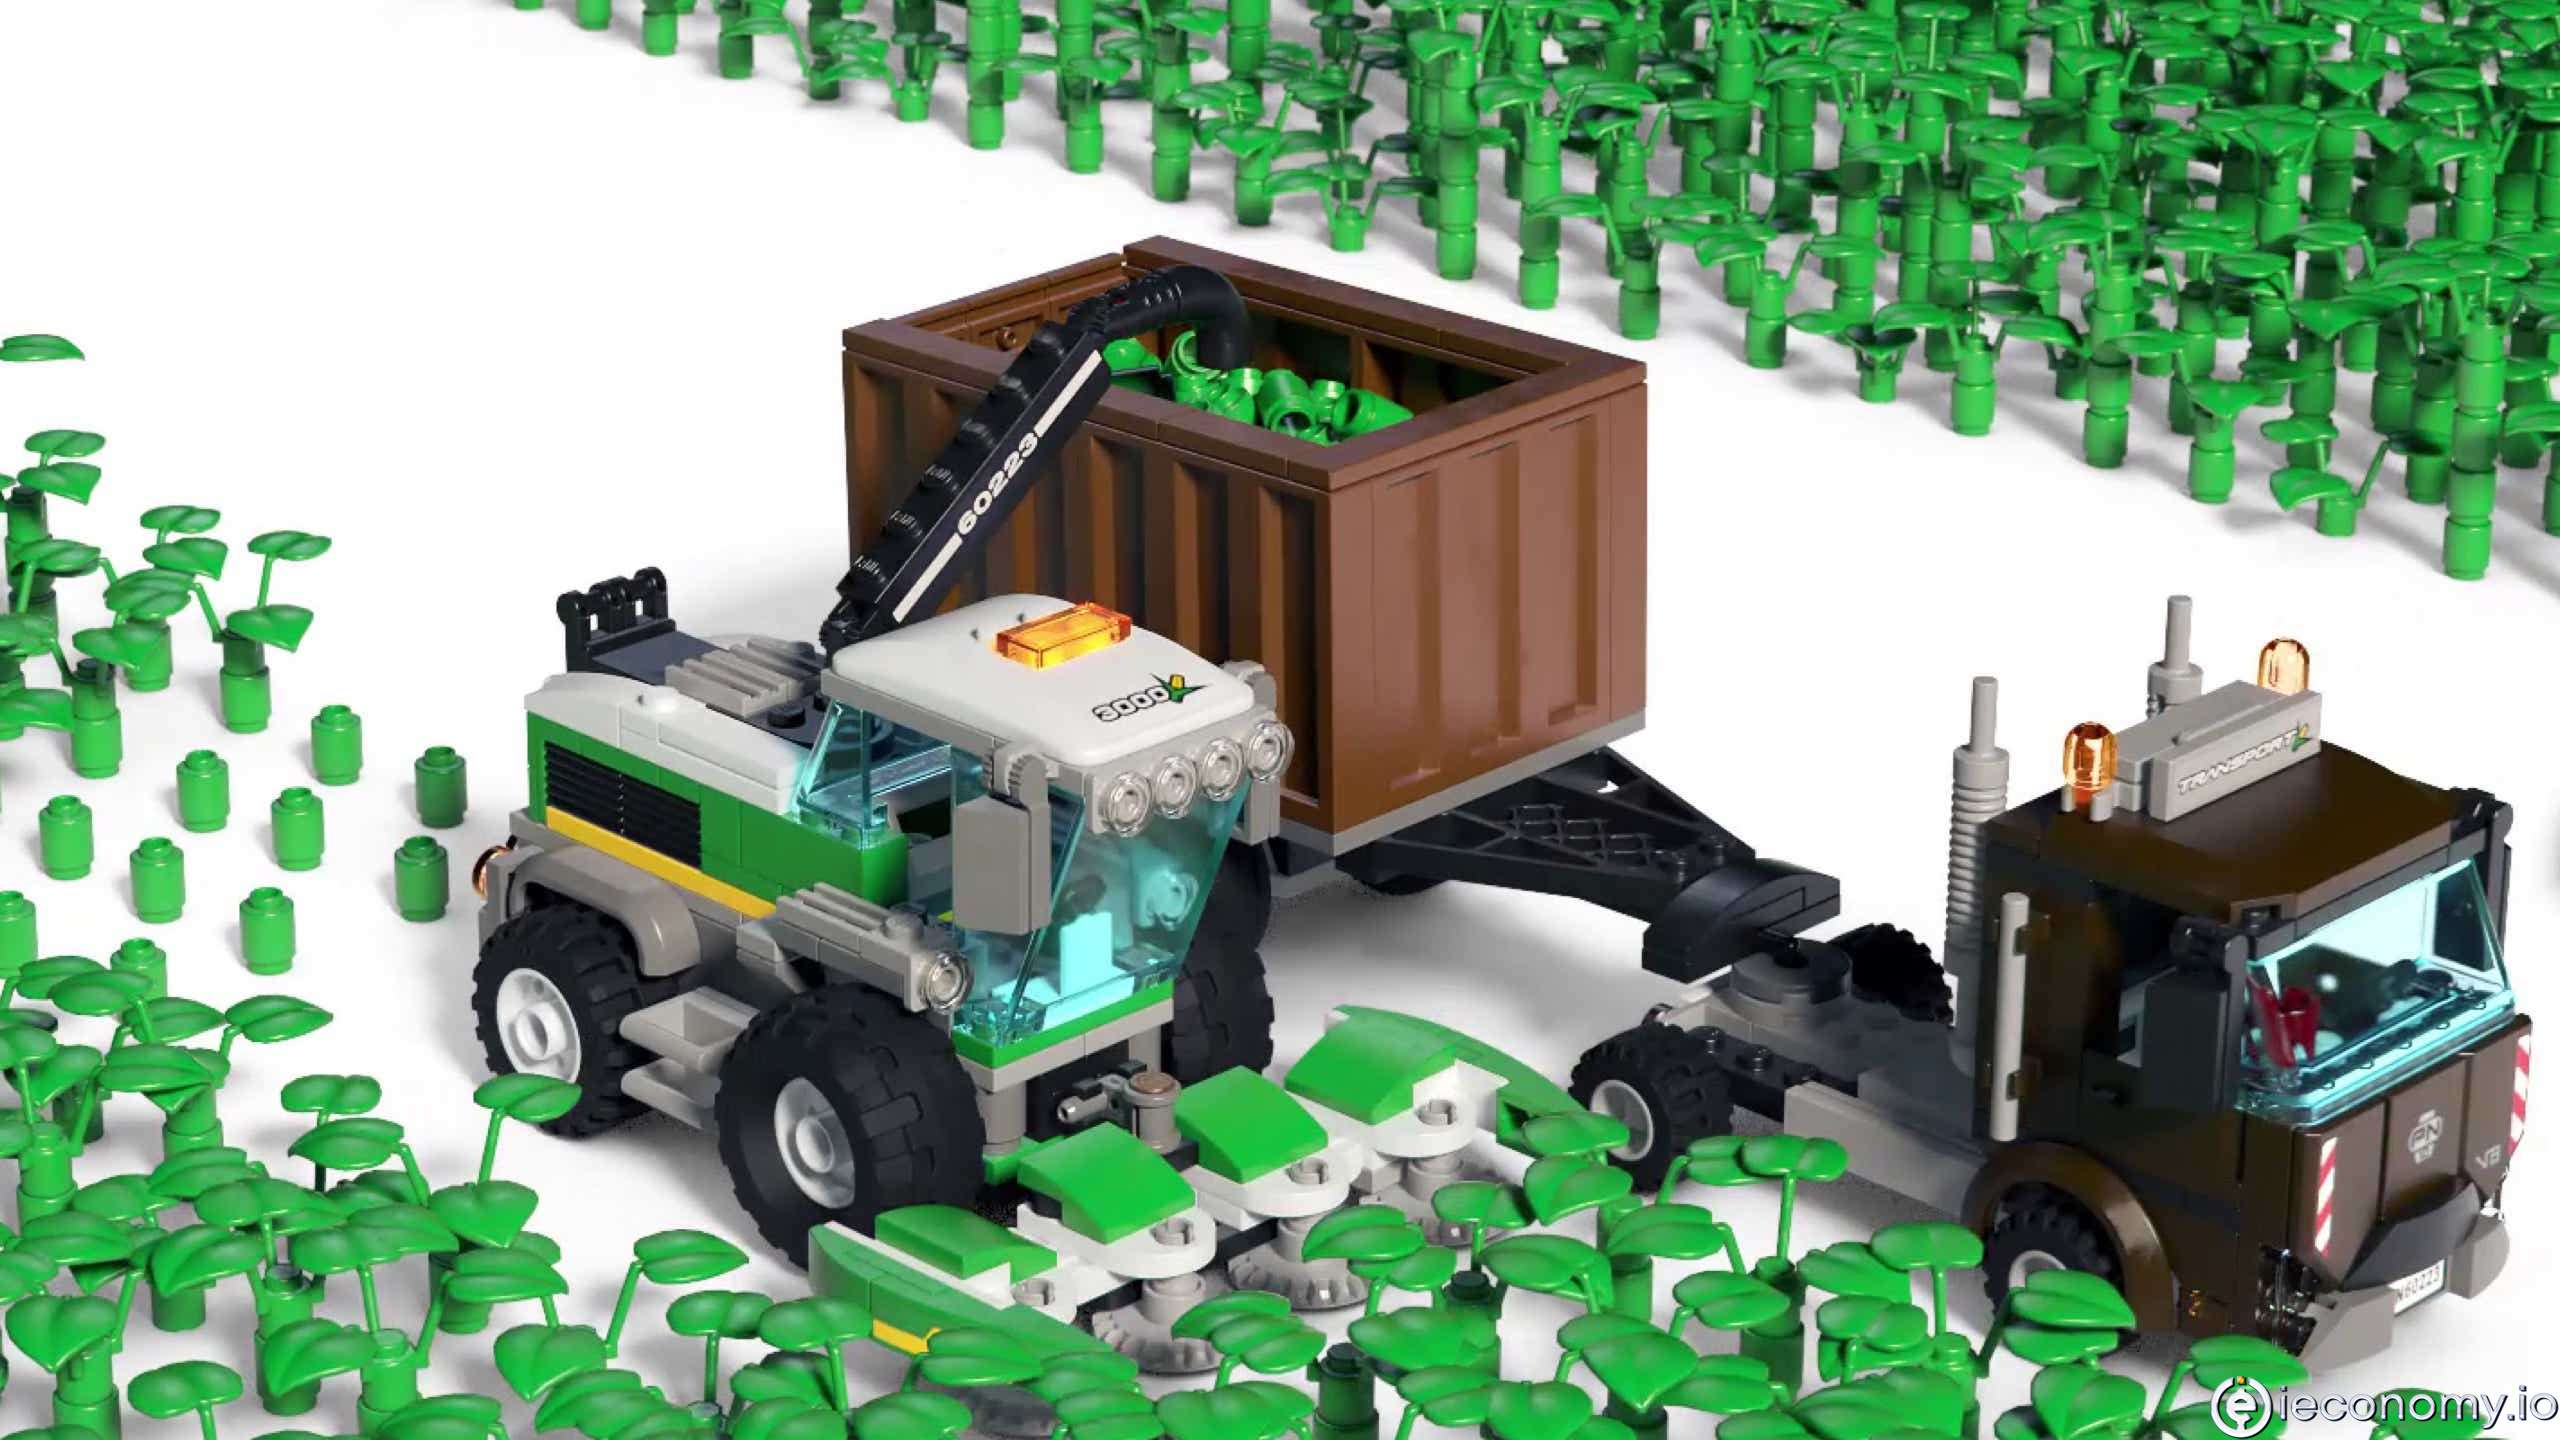 Lego, tuğlaları yenilenebilir malzemelerden üretmek istiyor